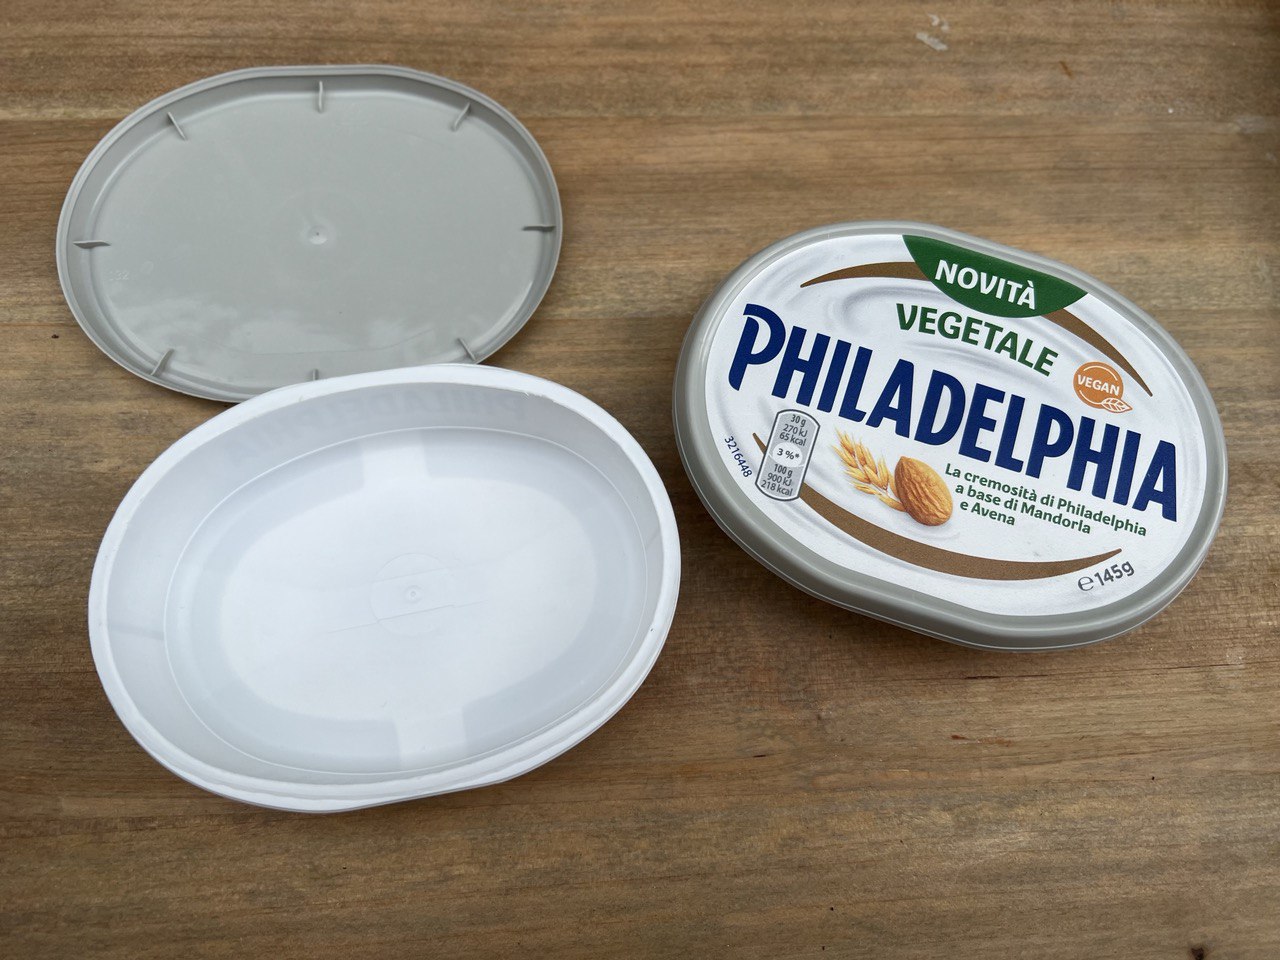 Contenitore del Philadelphia riciclato per stampo sapone artigianale